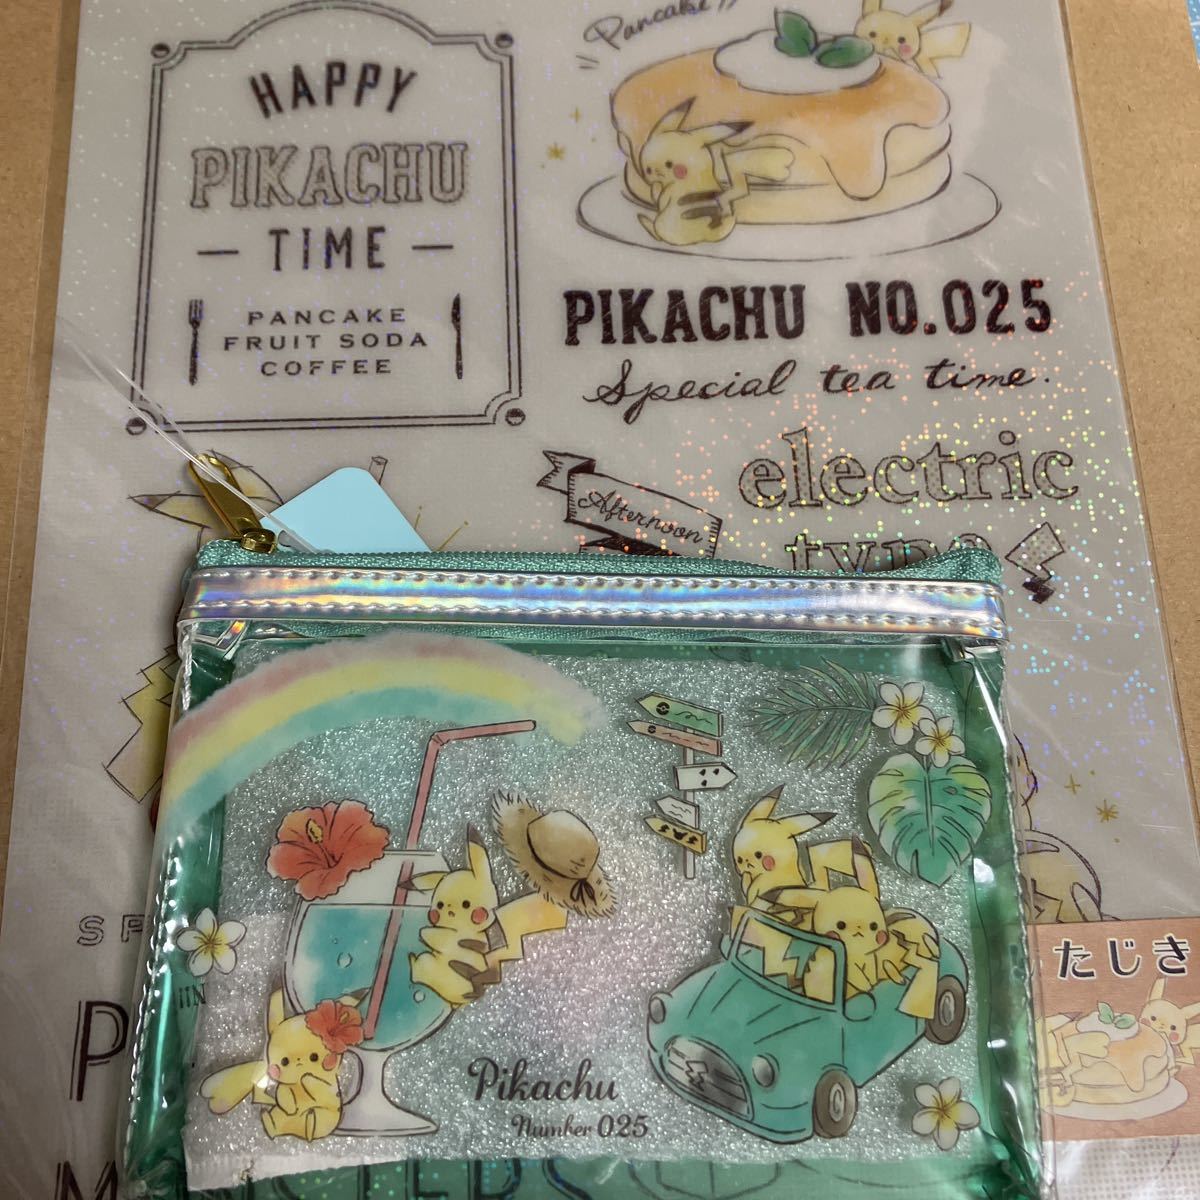 ポケットモンスター ポケモン 下敷き ピカチュウ happy pikachu time 025 pokemon クリアミニポーチの画像1